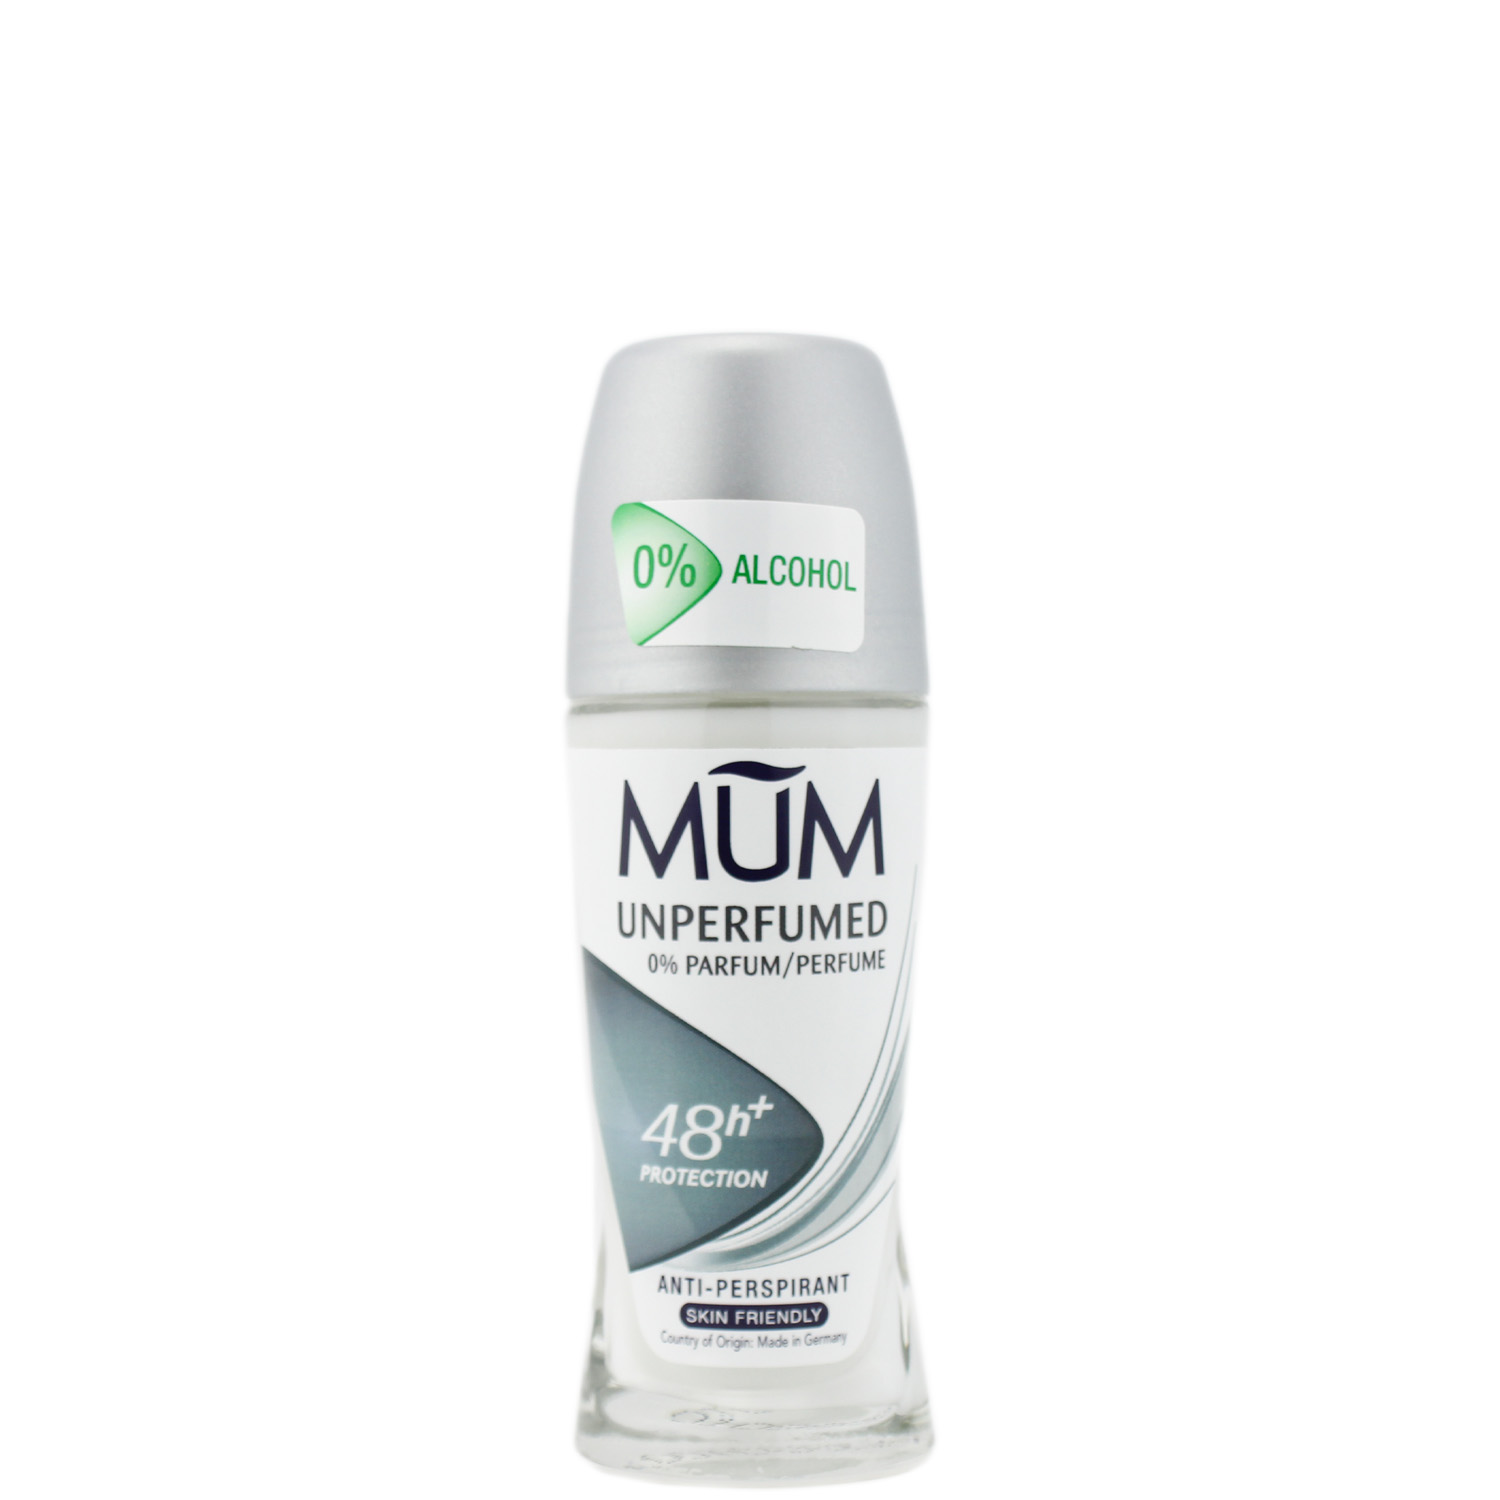 Mum Unperfumed 48h+ Antitranspirant Deodorant Roll-On 50ml